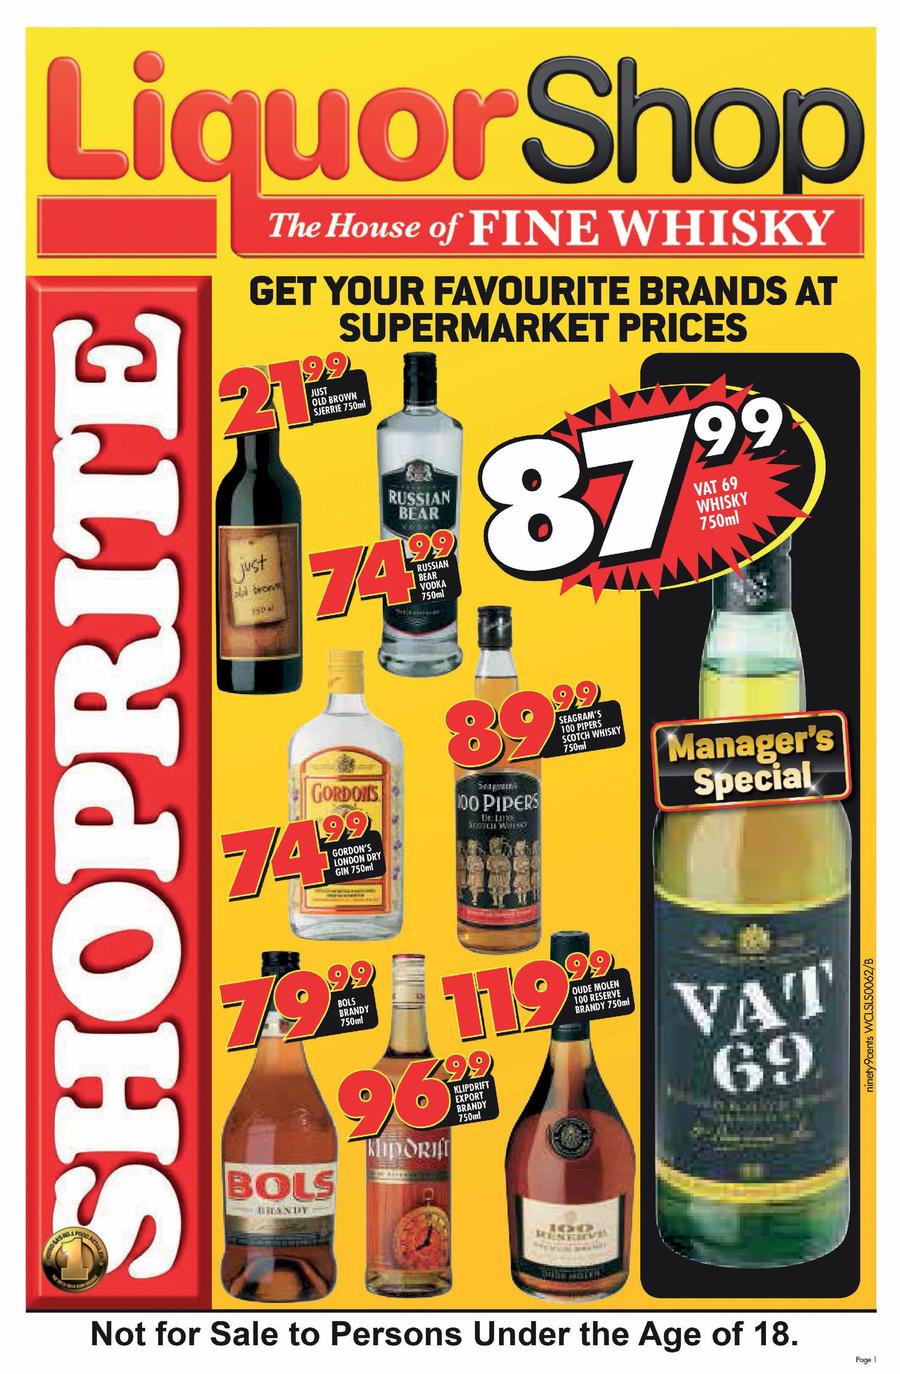 Shoprite Western Cape Liquor Shop 26 May 07 Jun 2014 M Guzzle Co Za